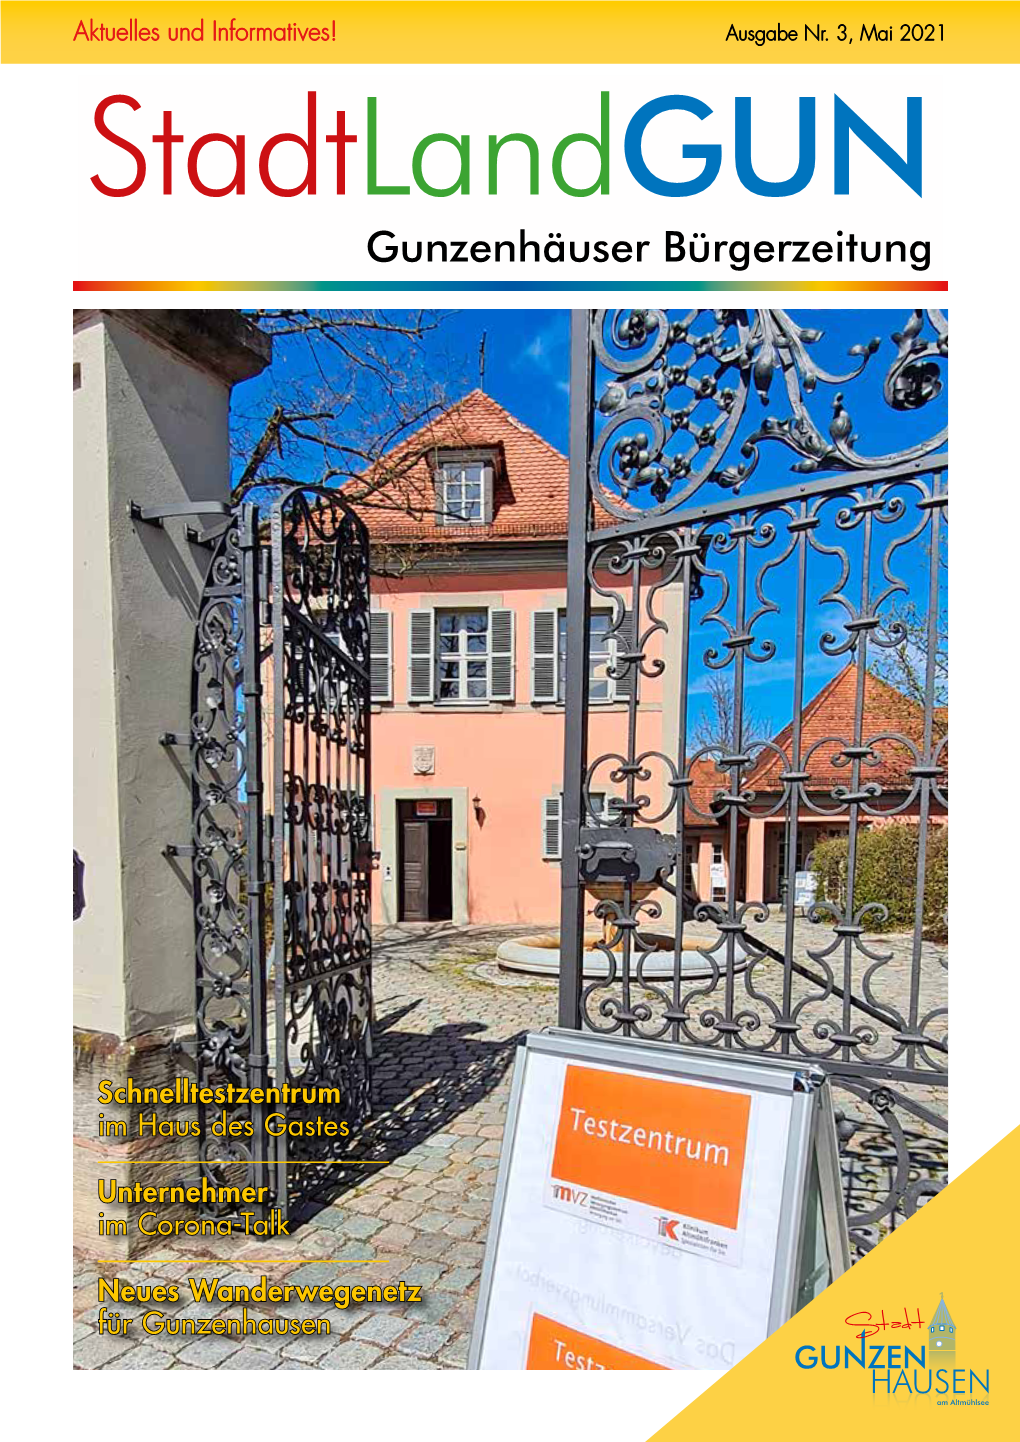 Stadtlandgun Gunzenhäuser Bürgerzeitung Nr. 3 | Mai 2021